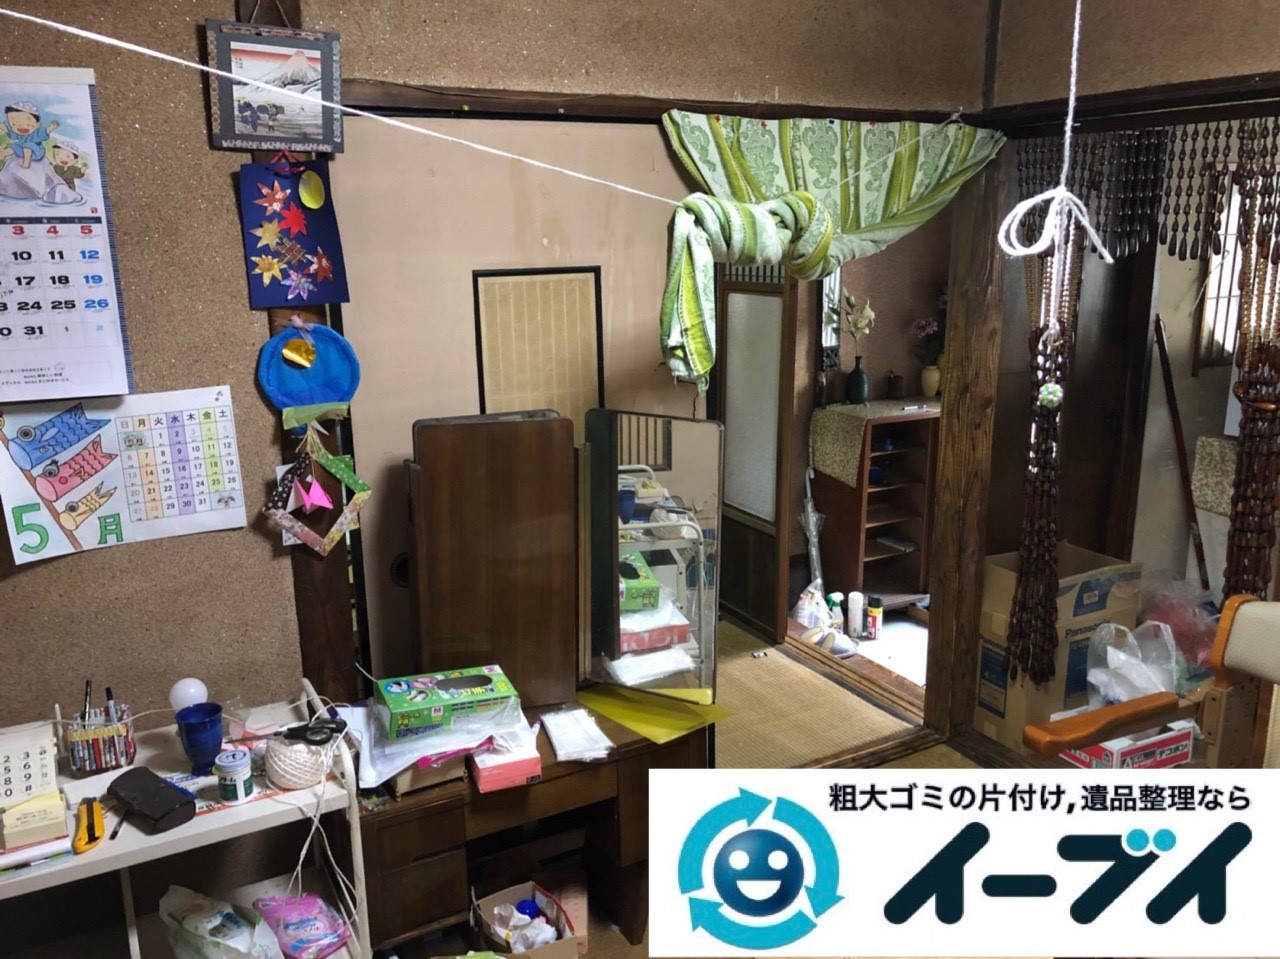 2018年12月9日大阪府大阪市住之江区で施設入居に伴い生活用品や家財の回収依頼。写真2